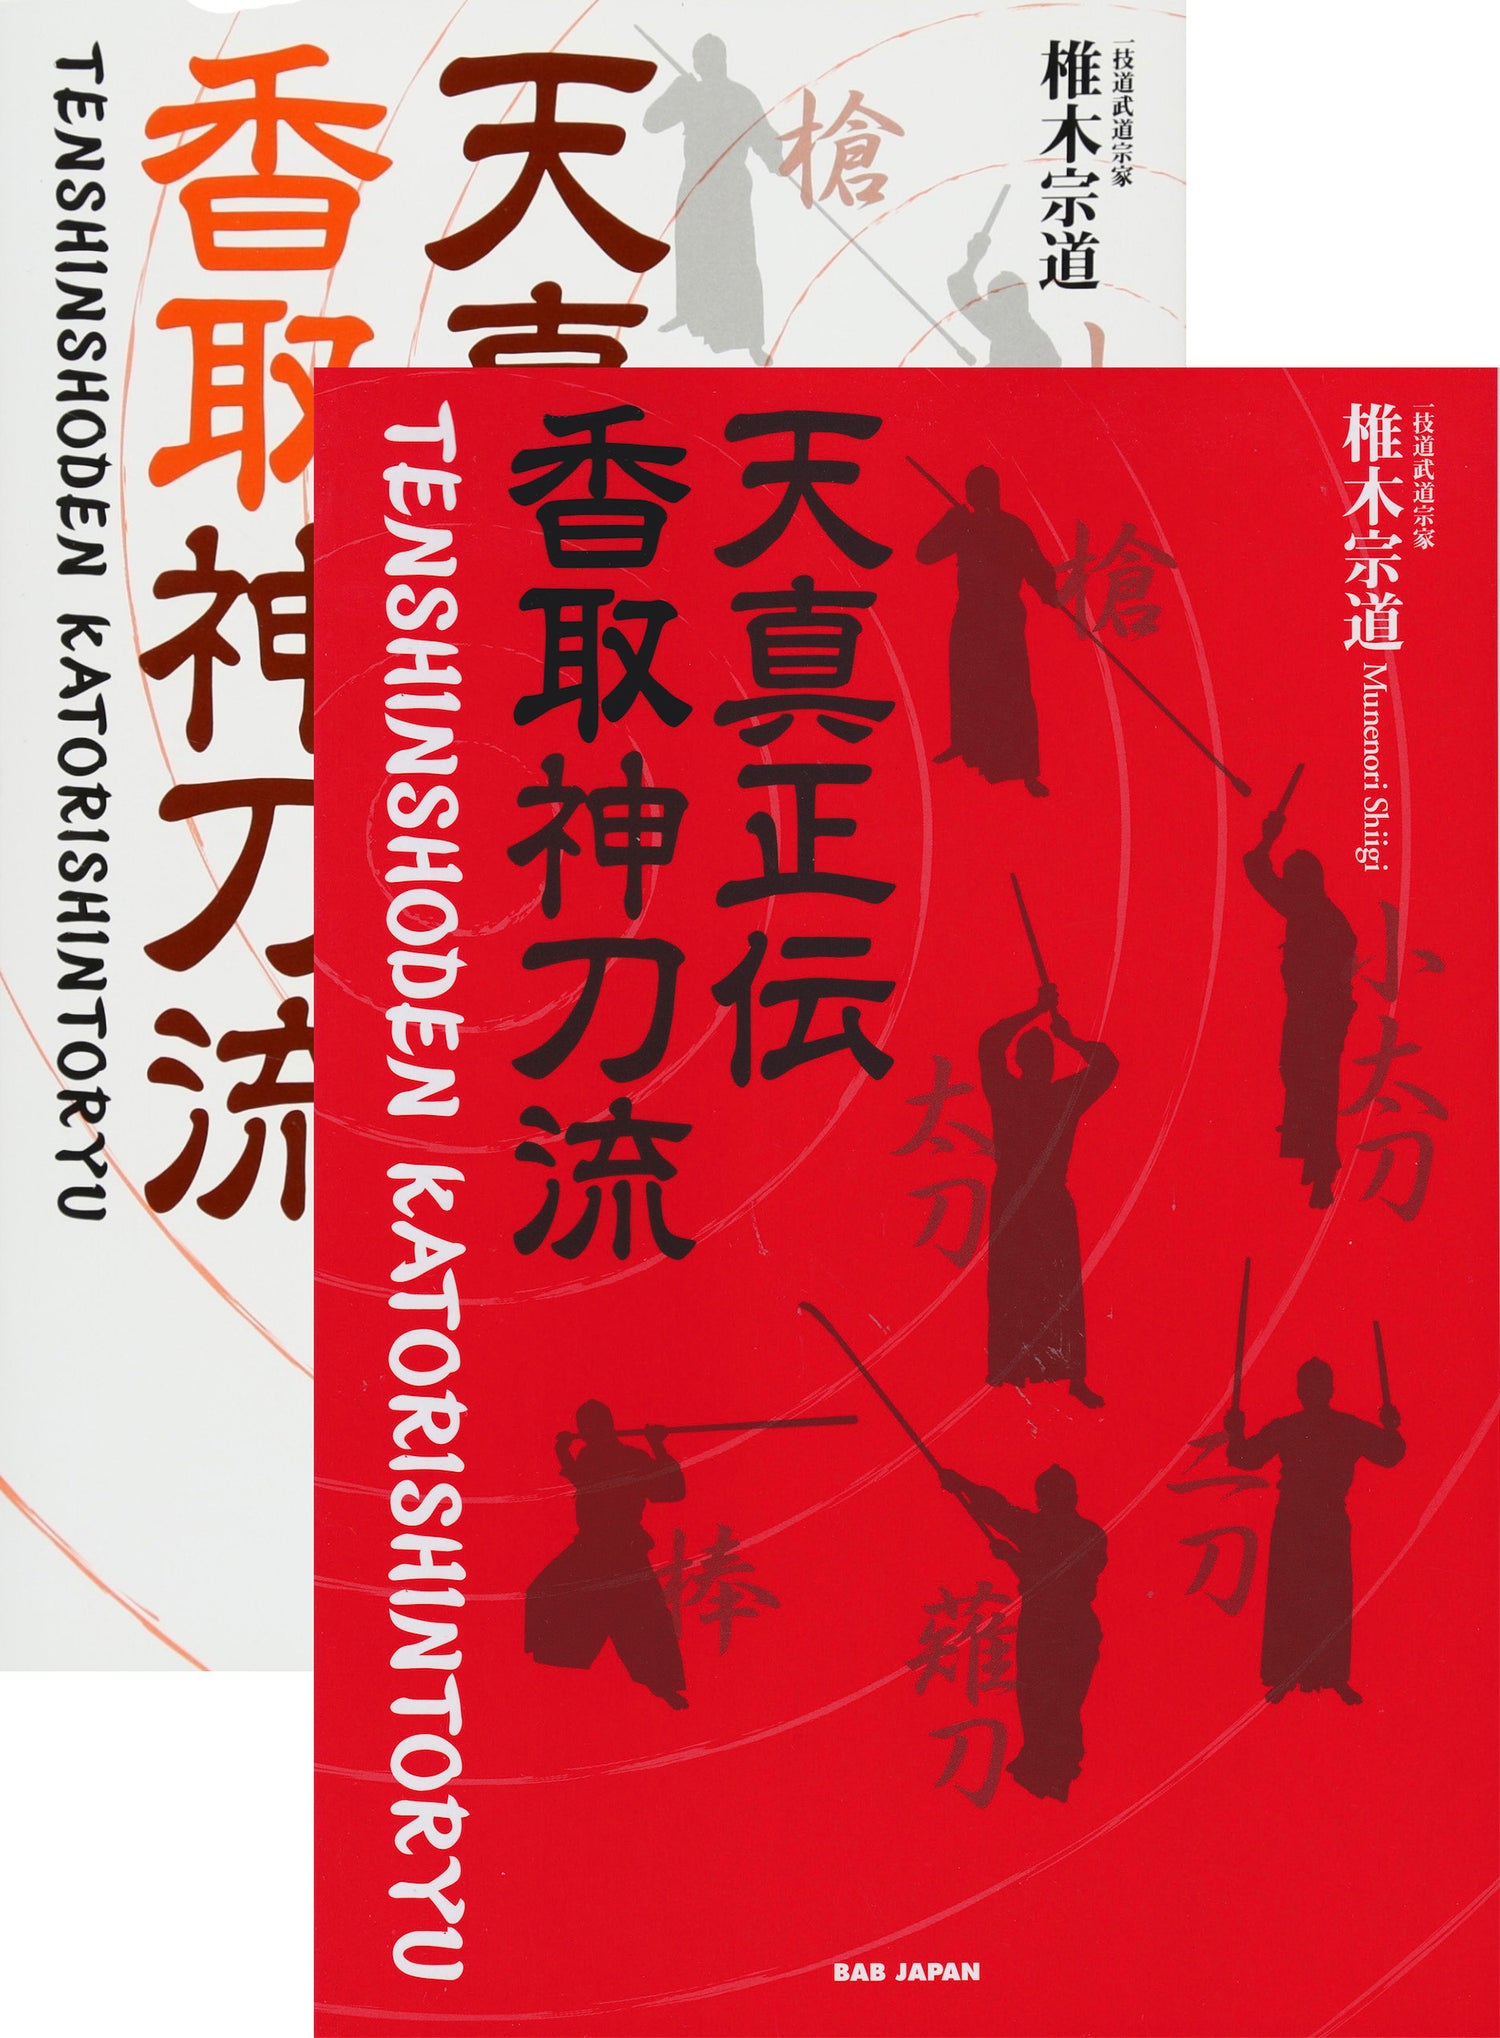 Tenshin Shoden Katori Shinto Ryu 2 Book Set (with English Translation) by Munenori Shiigi - Budovideos